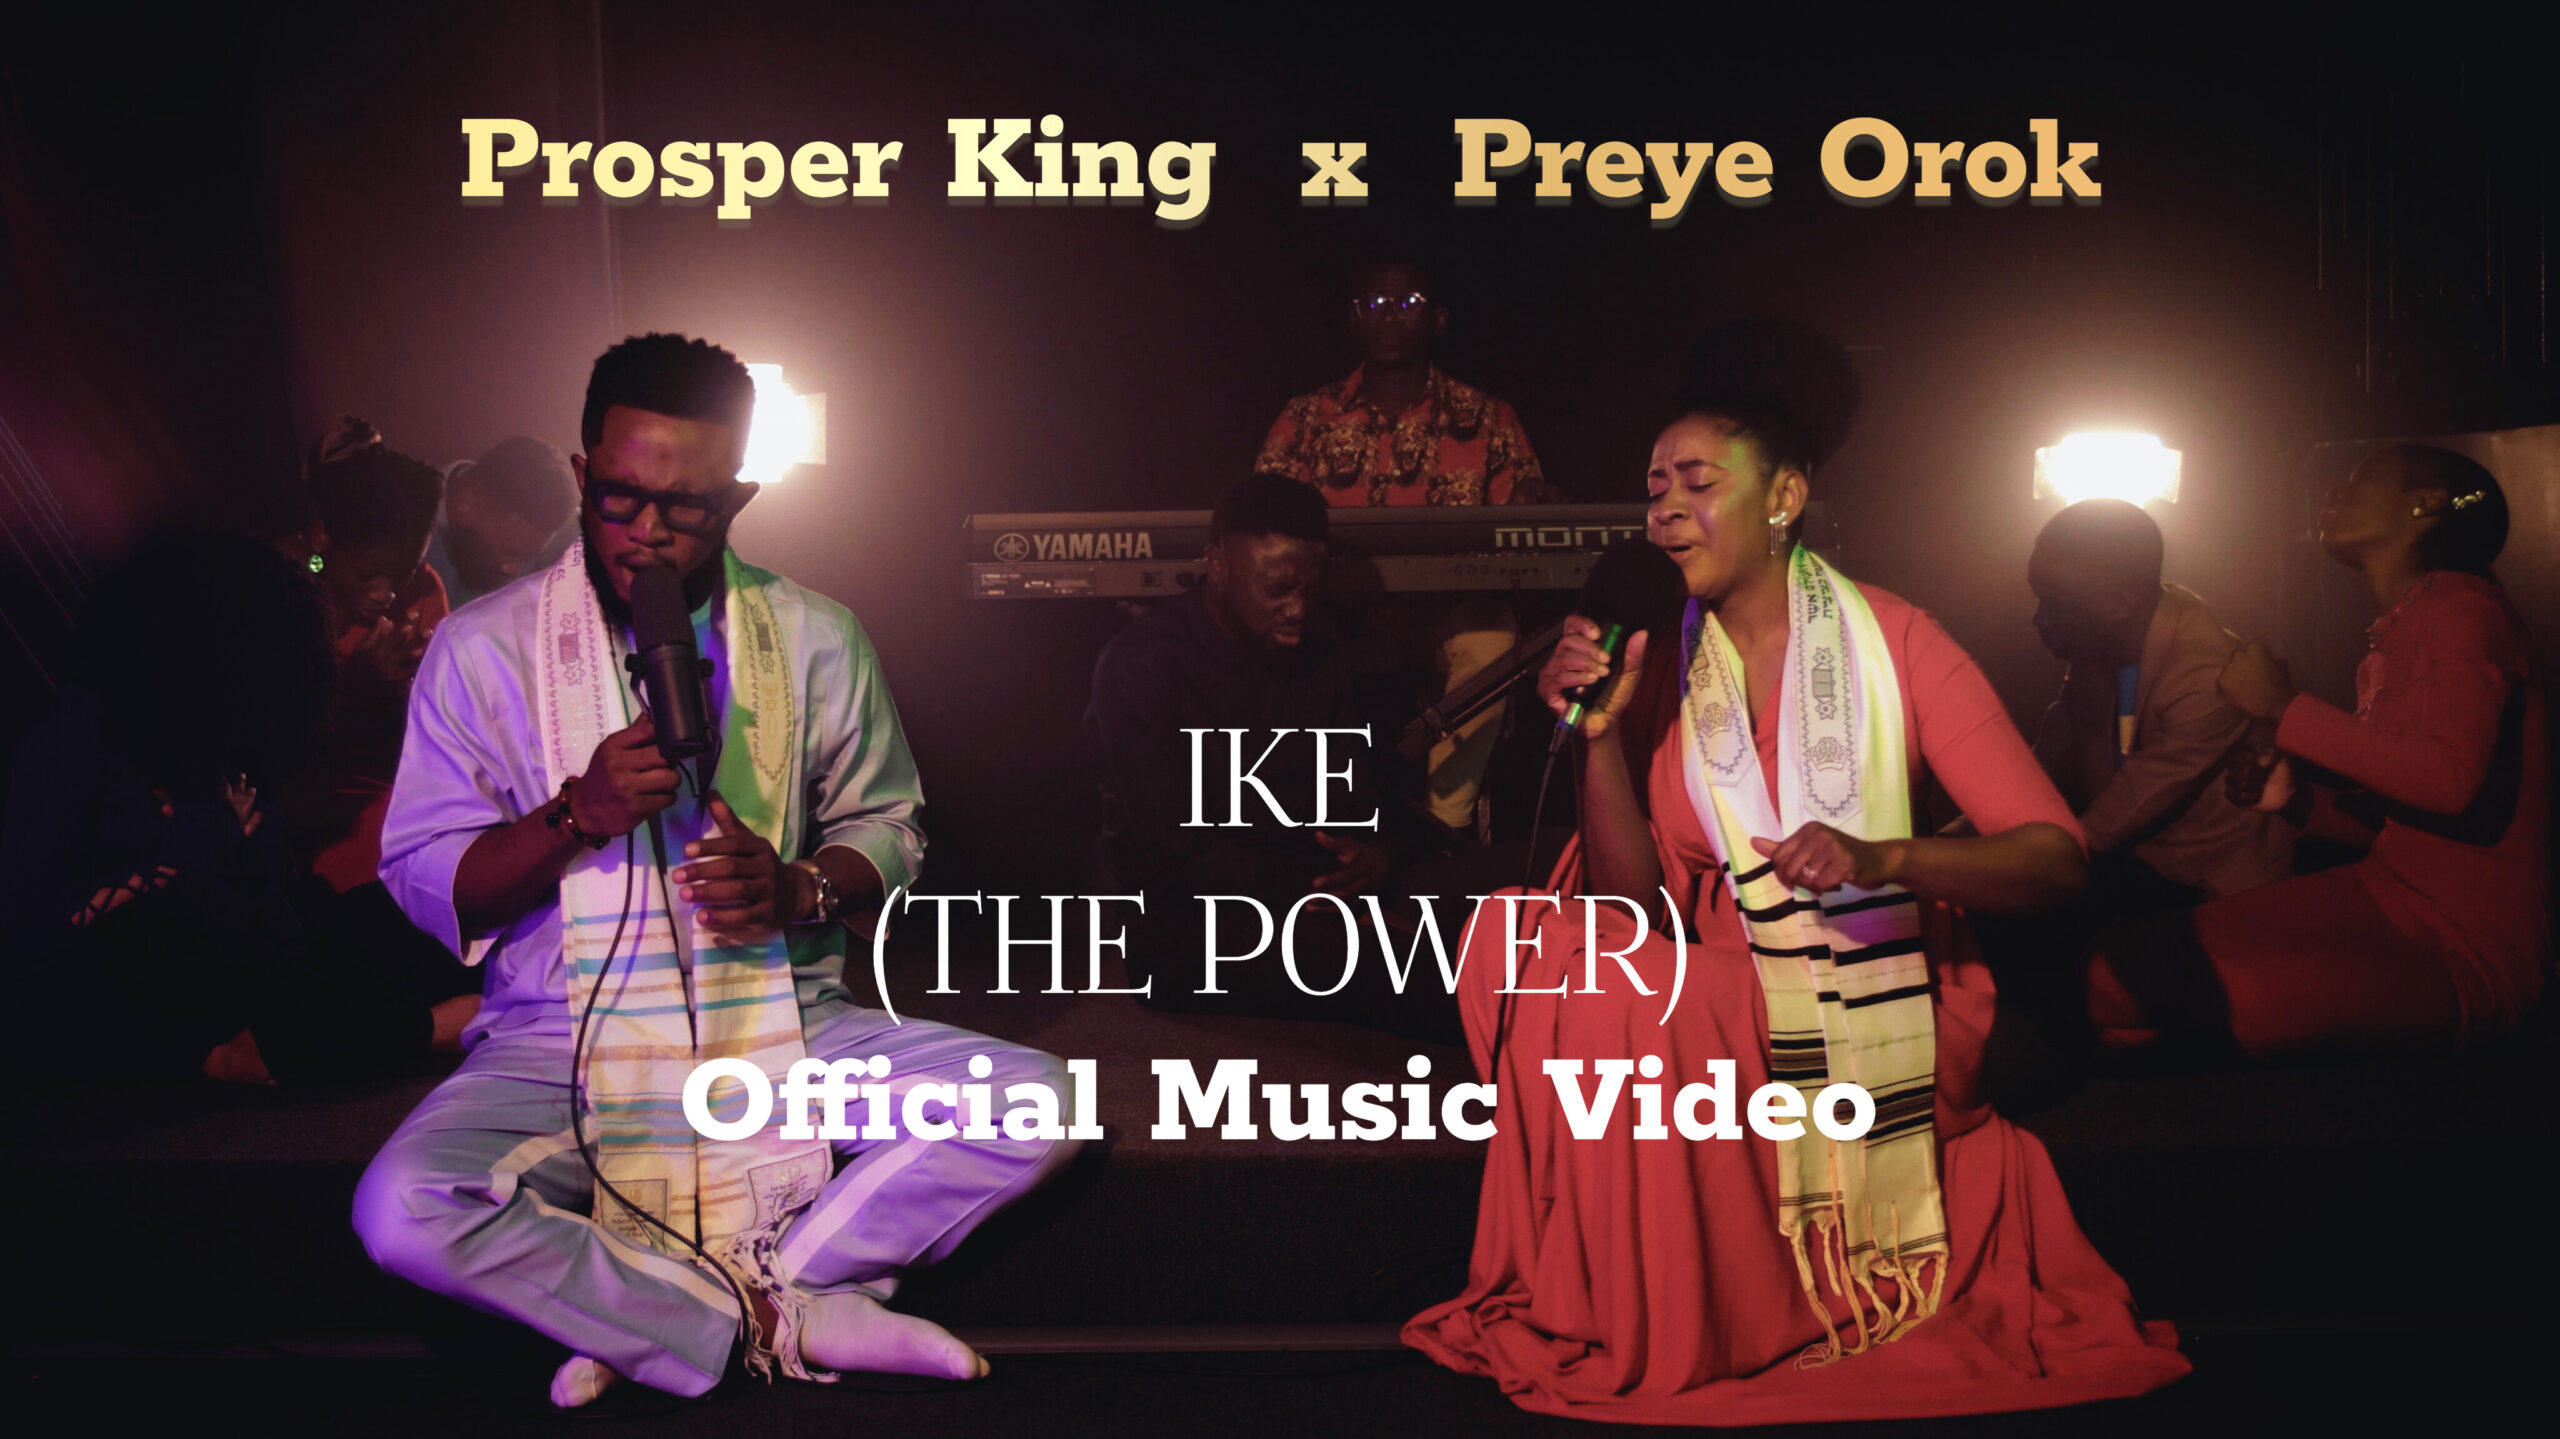 Ike by Prosper King ft. Preye Orok